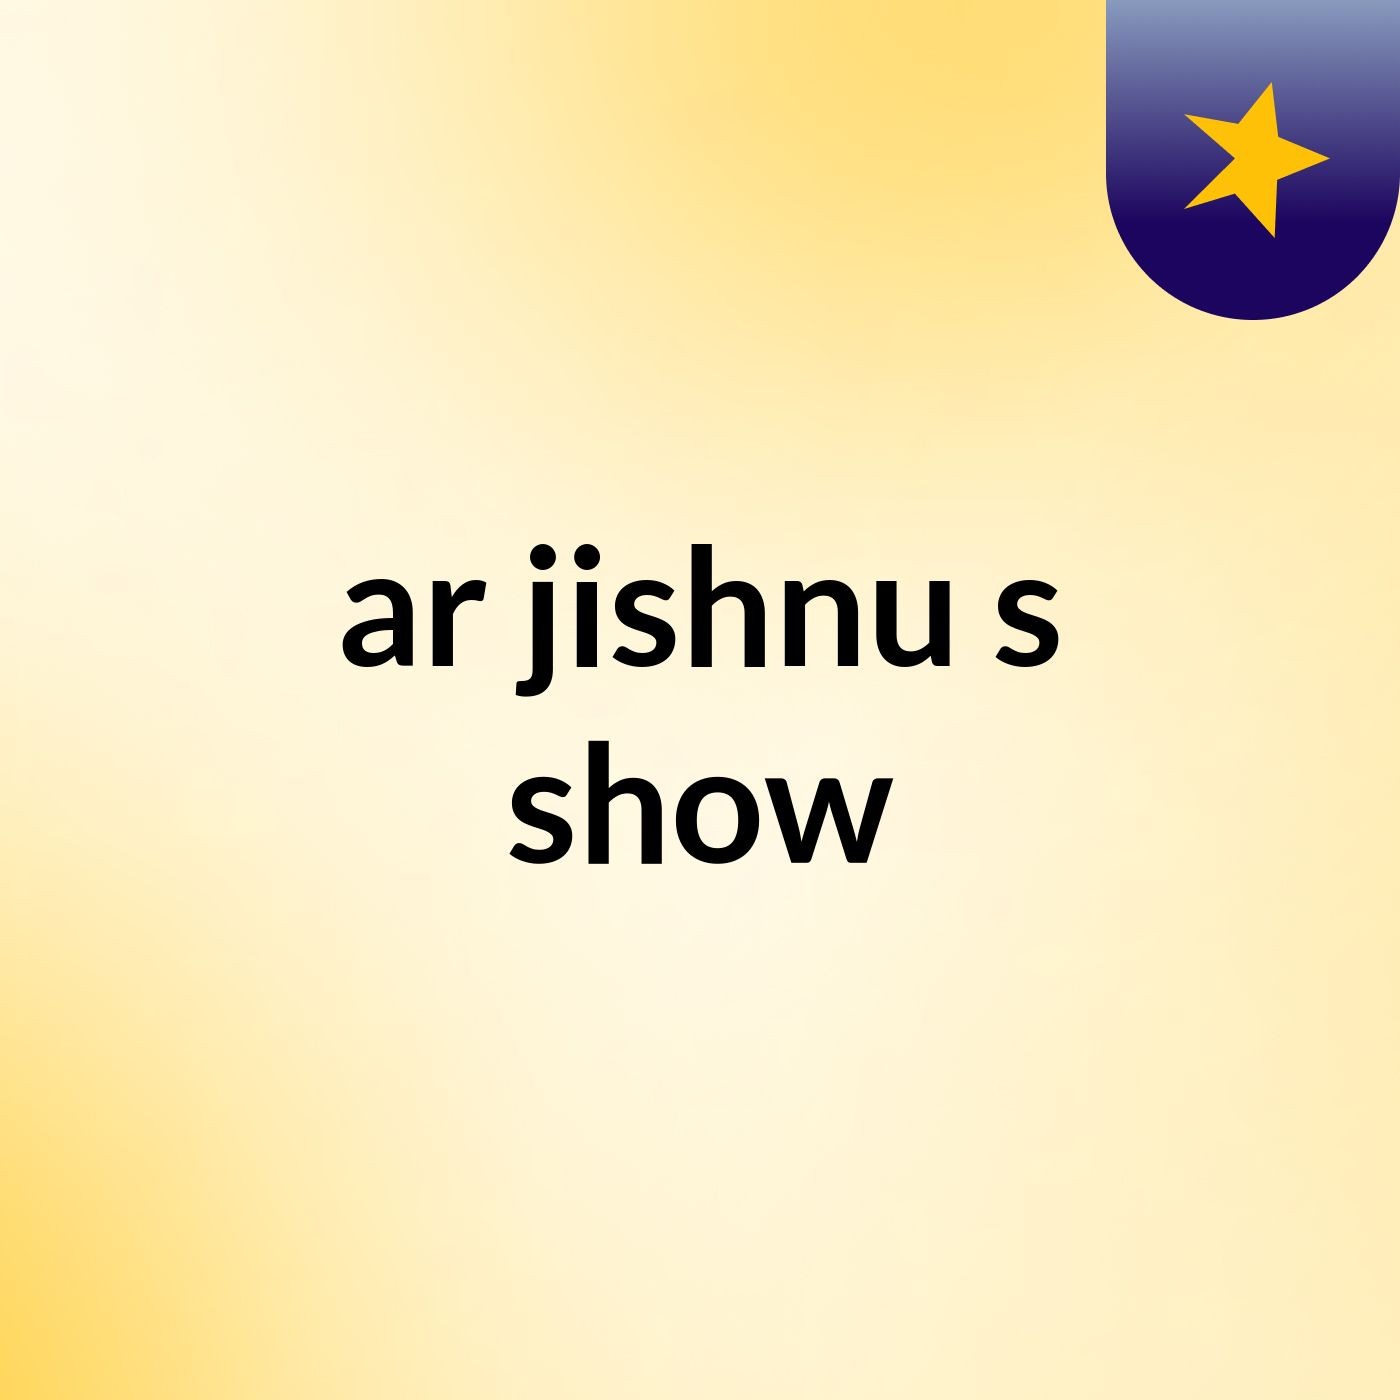 ar jishnu's show